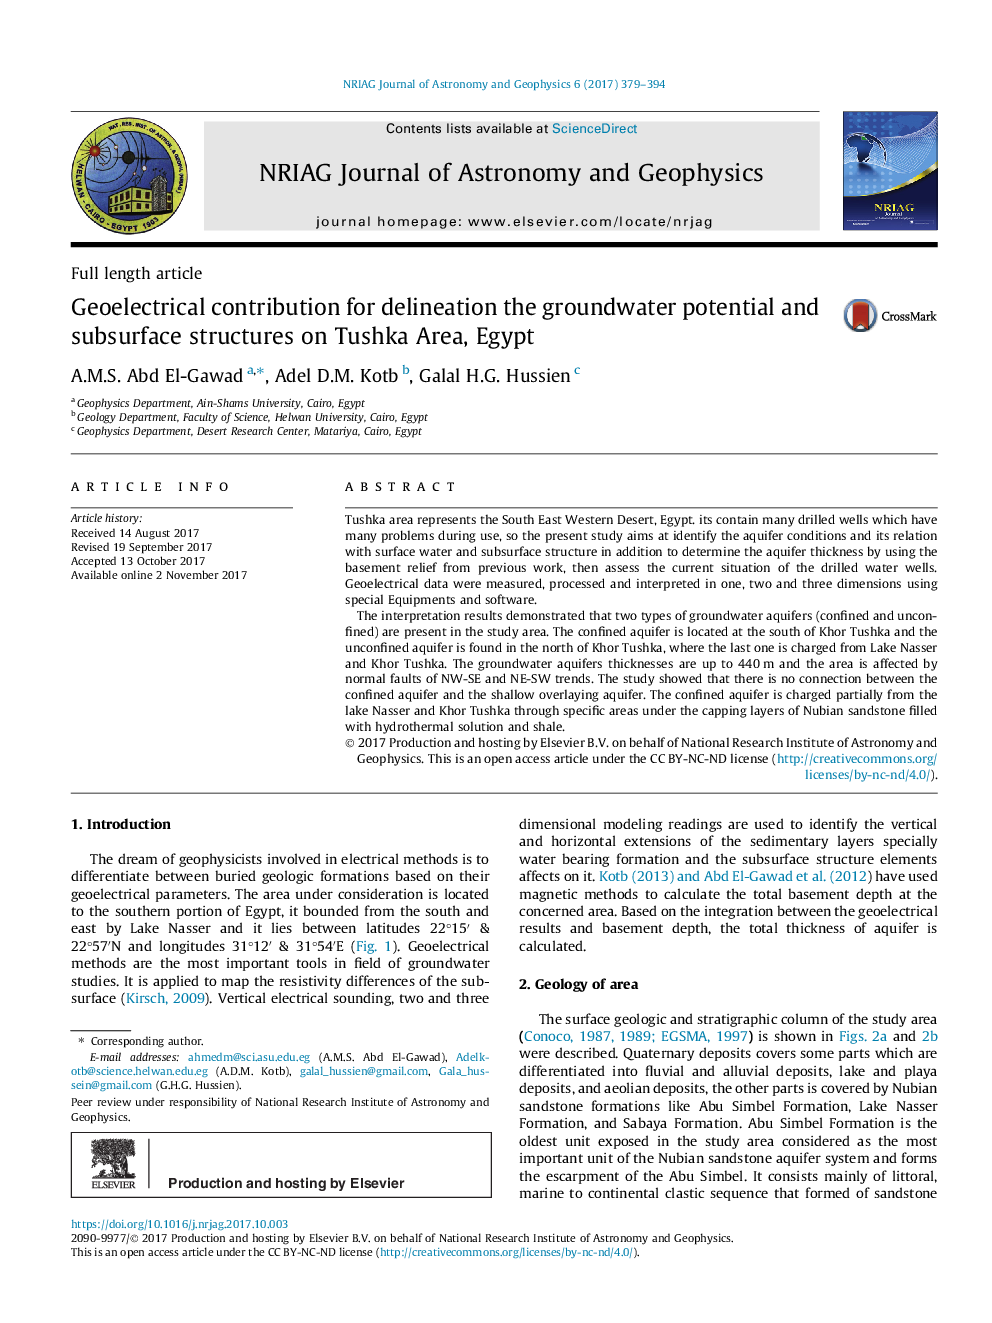 سهم ژئوکتریکی برای تعیین پتانسیل آب زیرزمینی و ساختارهای زیرزمینی در منطقه توشکا، مصر 